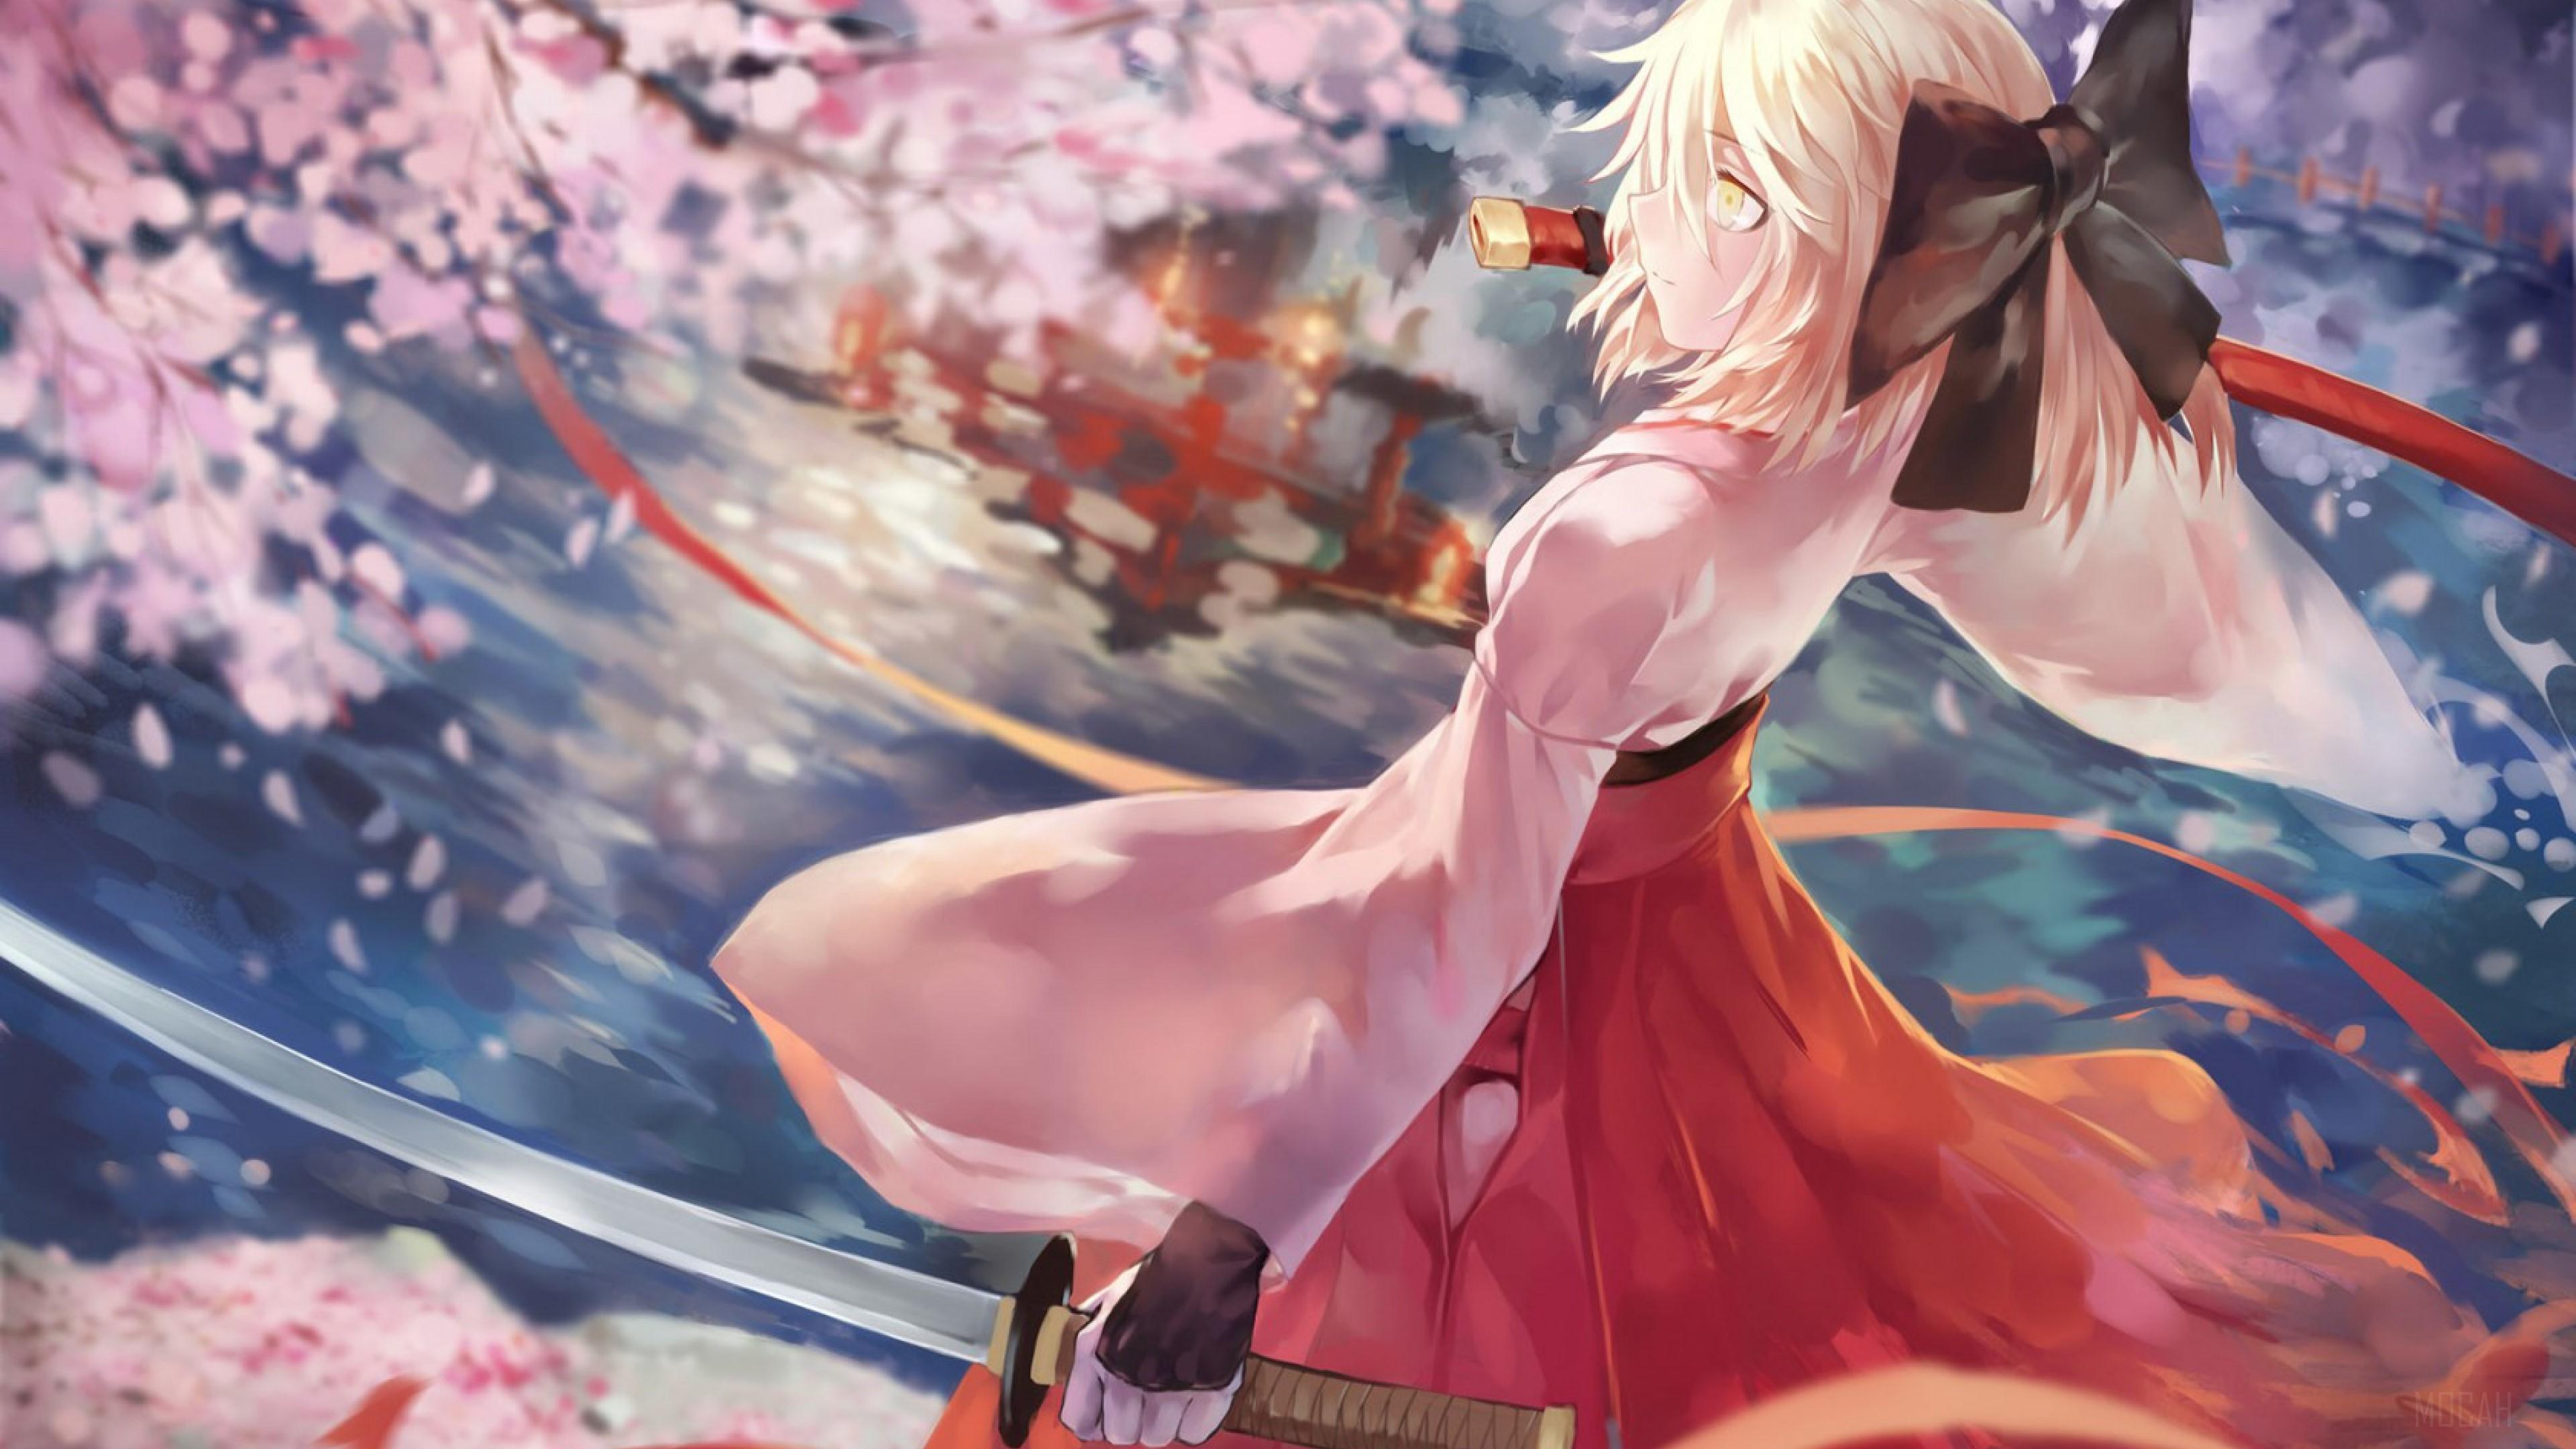 HD wallpaper, Fate Grand Order Sakura Saber 4K